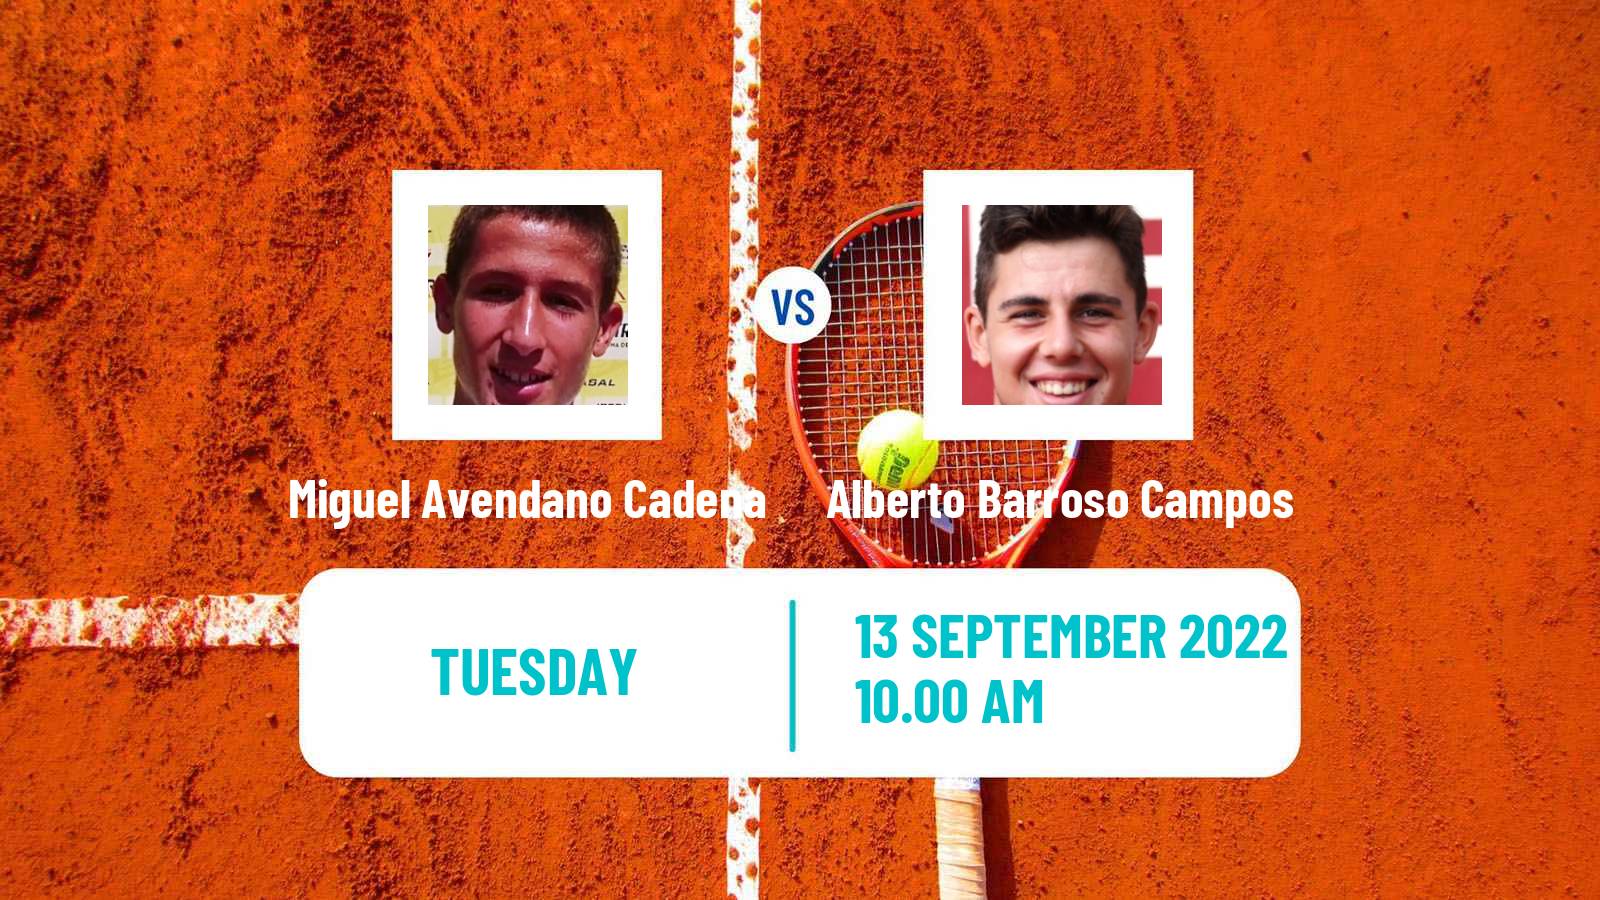 Tennis ITF Tournaments Miguel Avendano Cadena - Alberto Barroso Campos